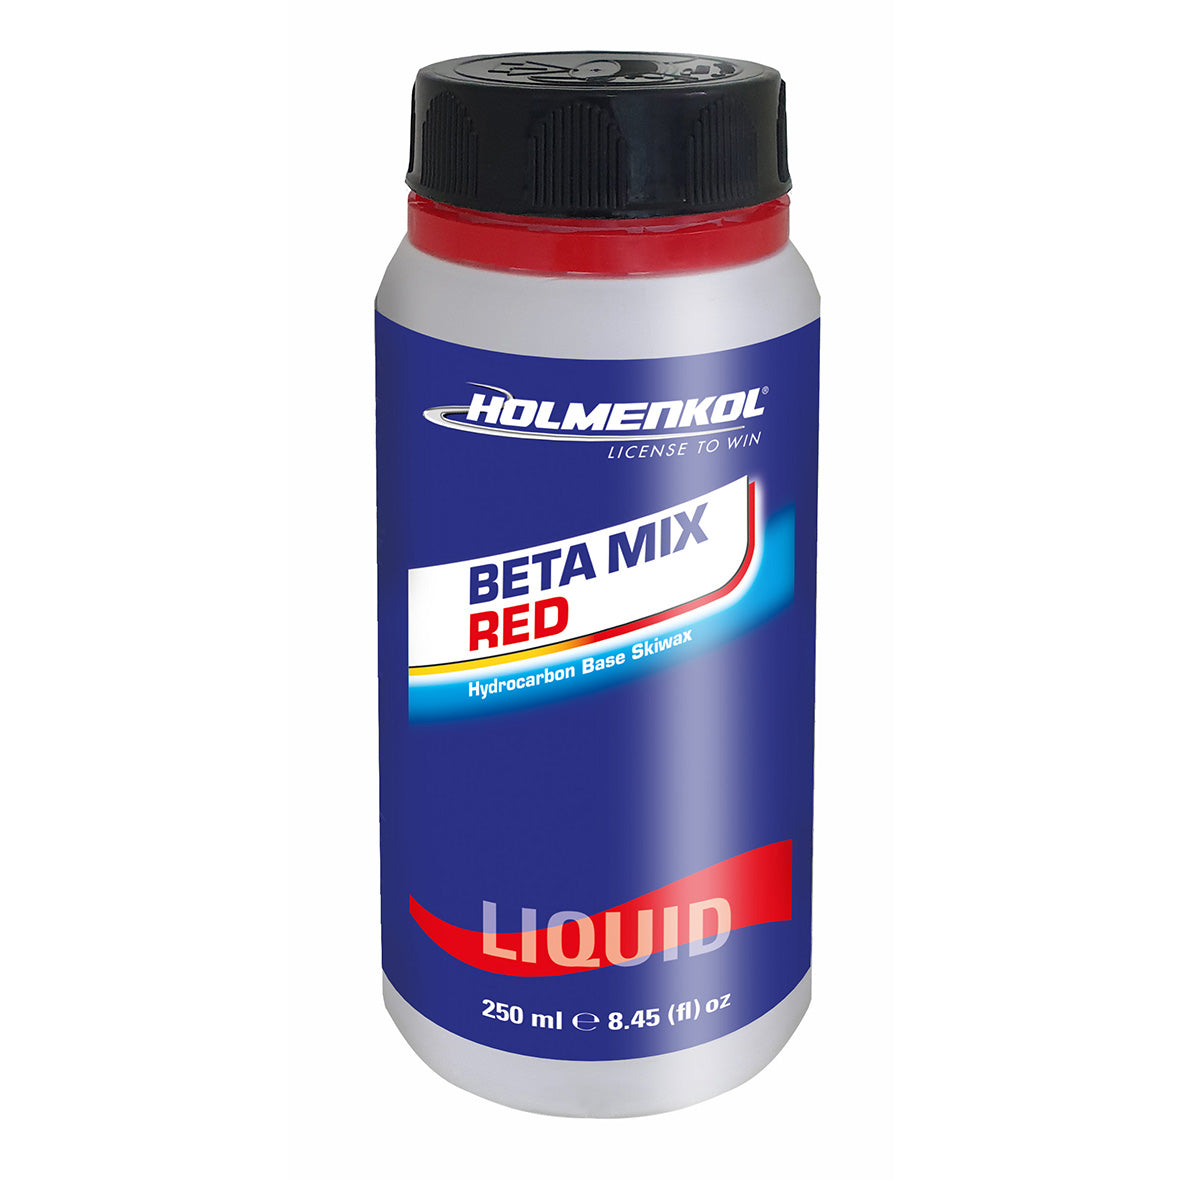 Holmenkol Beta Mix Red liquid 250ml-2